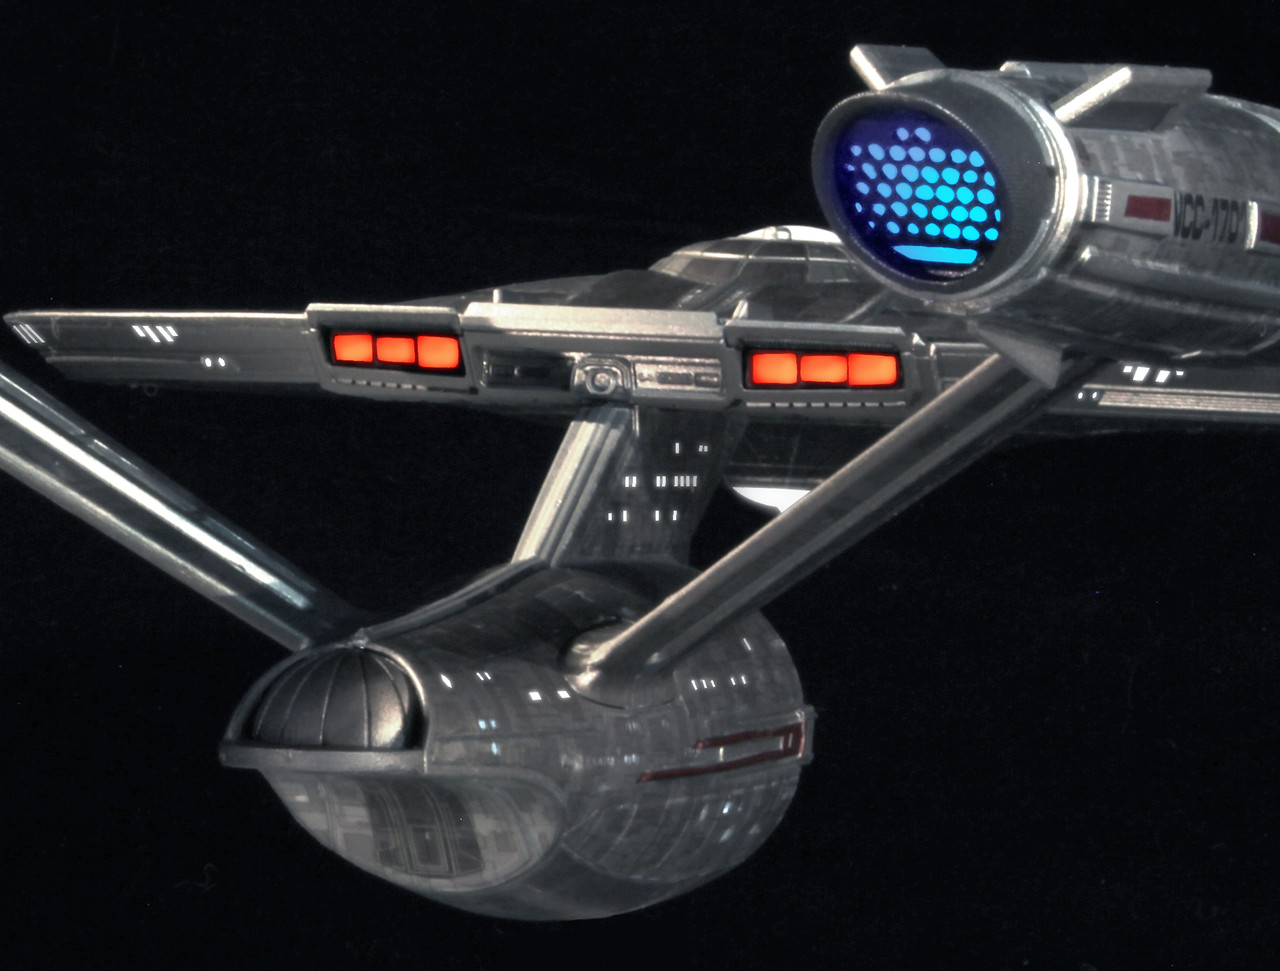 Discovery 1/1000 LED lighting kit for Star Trek USS Enterprise NCC 1701 